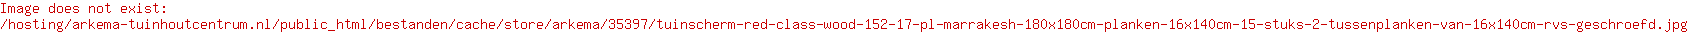 Tuinscherm Red Class Wood (15+2) 17-pl. Marrakesh 180x180cm Planken: 1.6x14.0cm / 15 stuks 2 tussenplanken van 1.6x14.0cm, rvs geschroefd